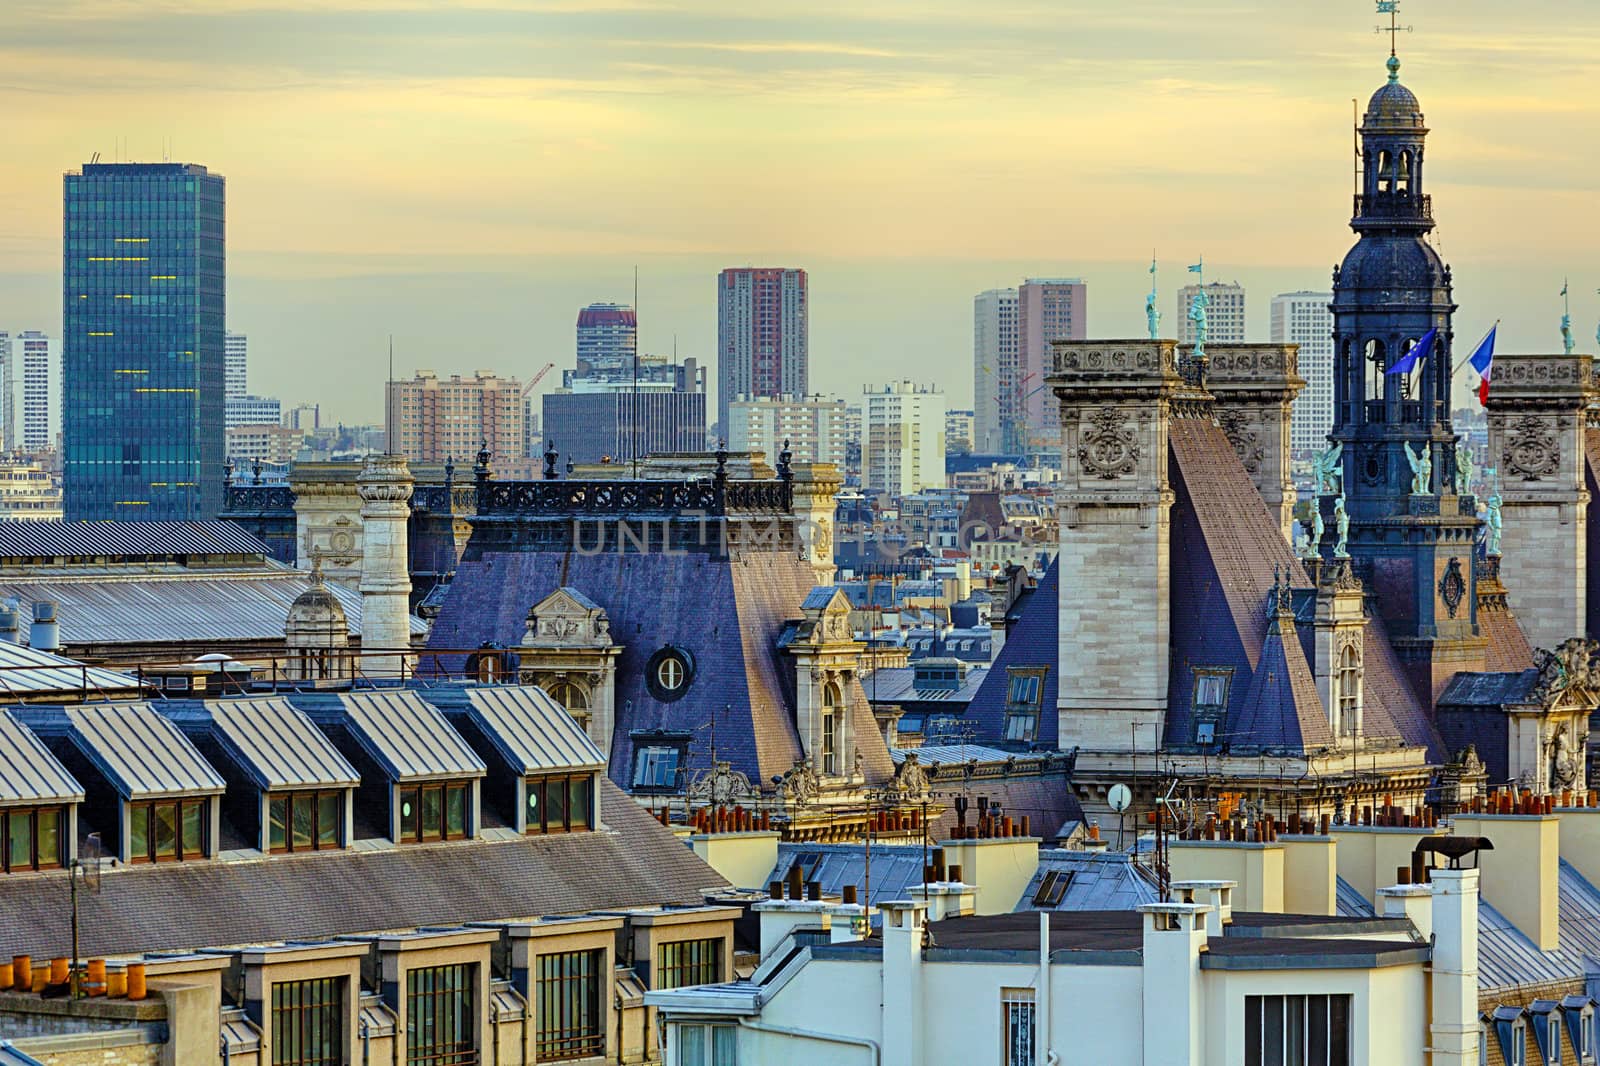 Panorama of Paris by Roka